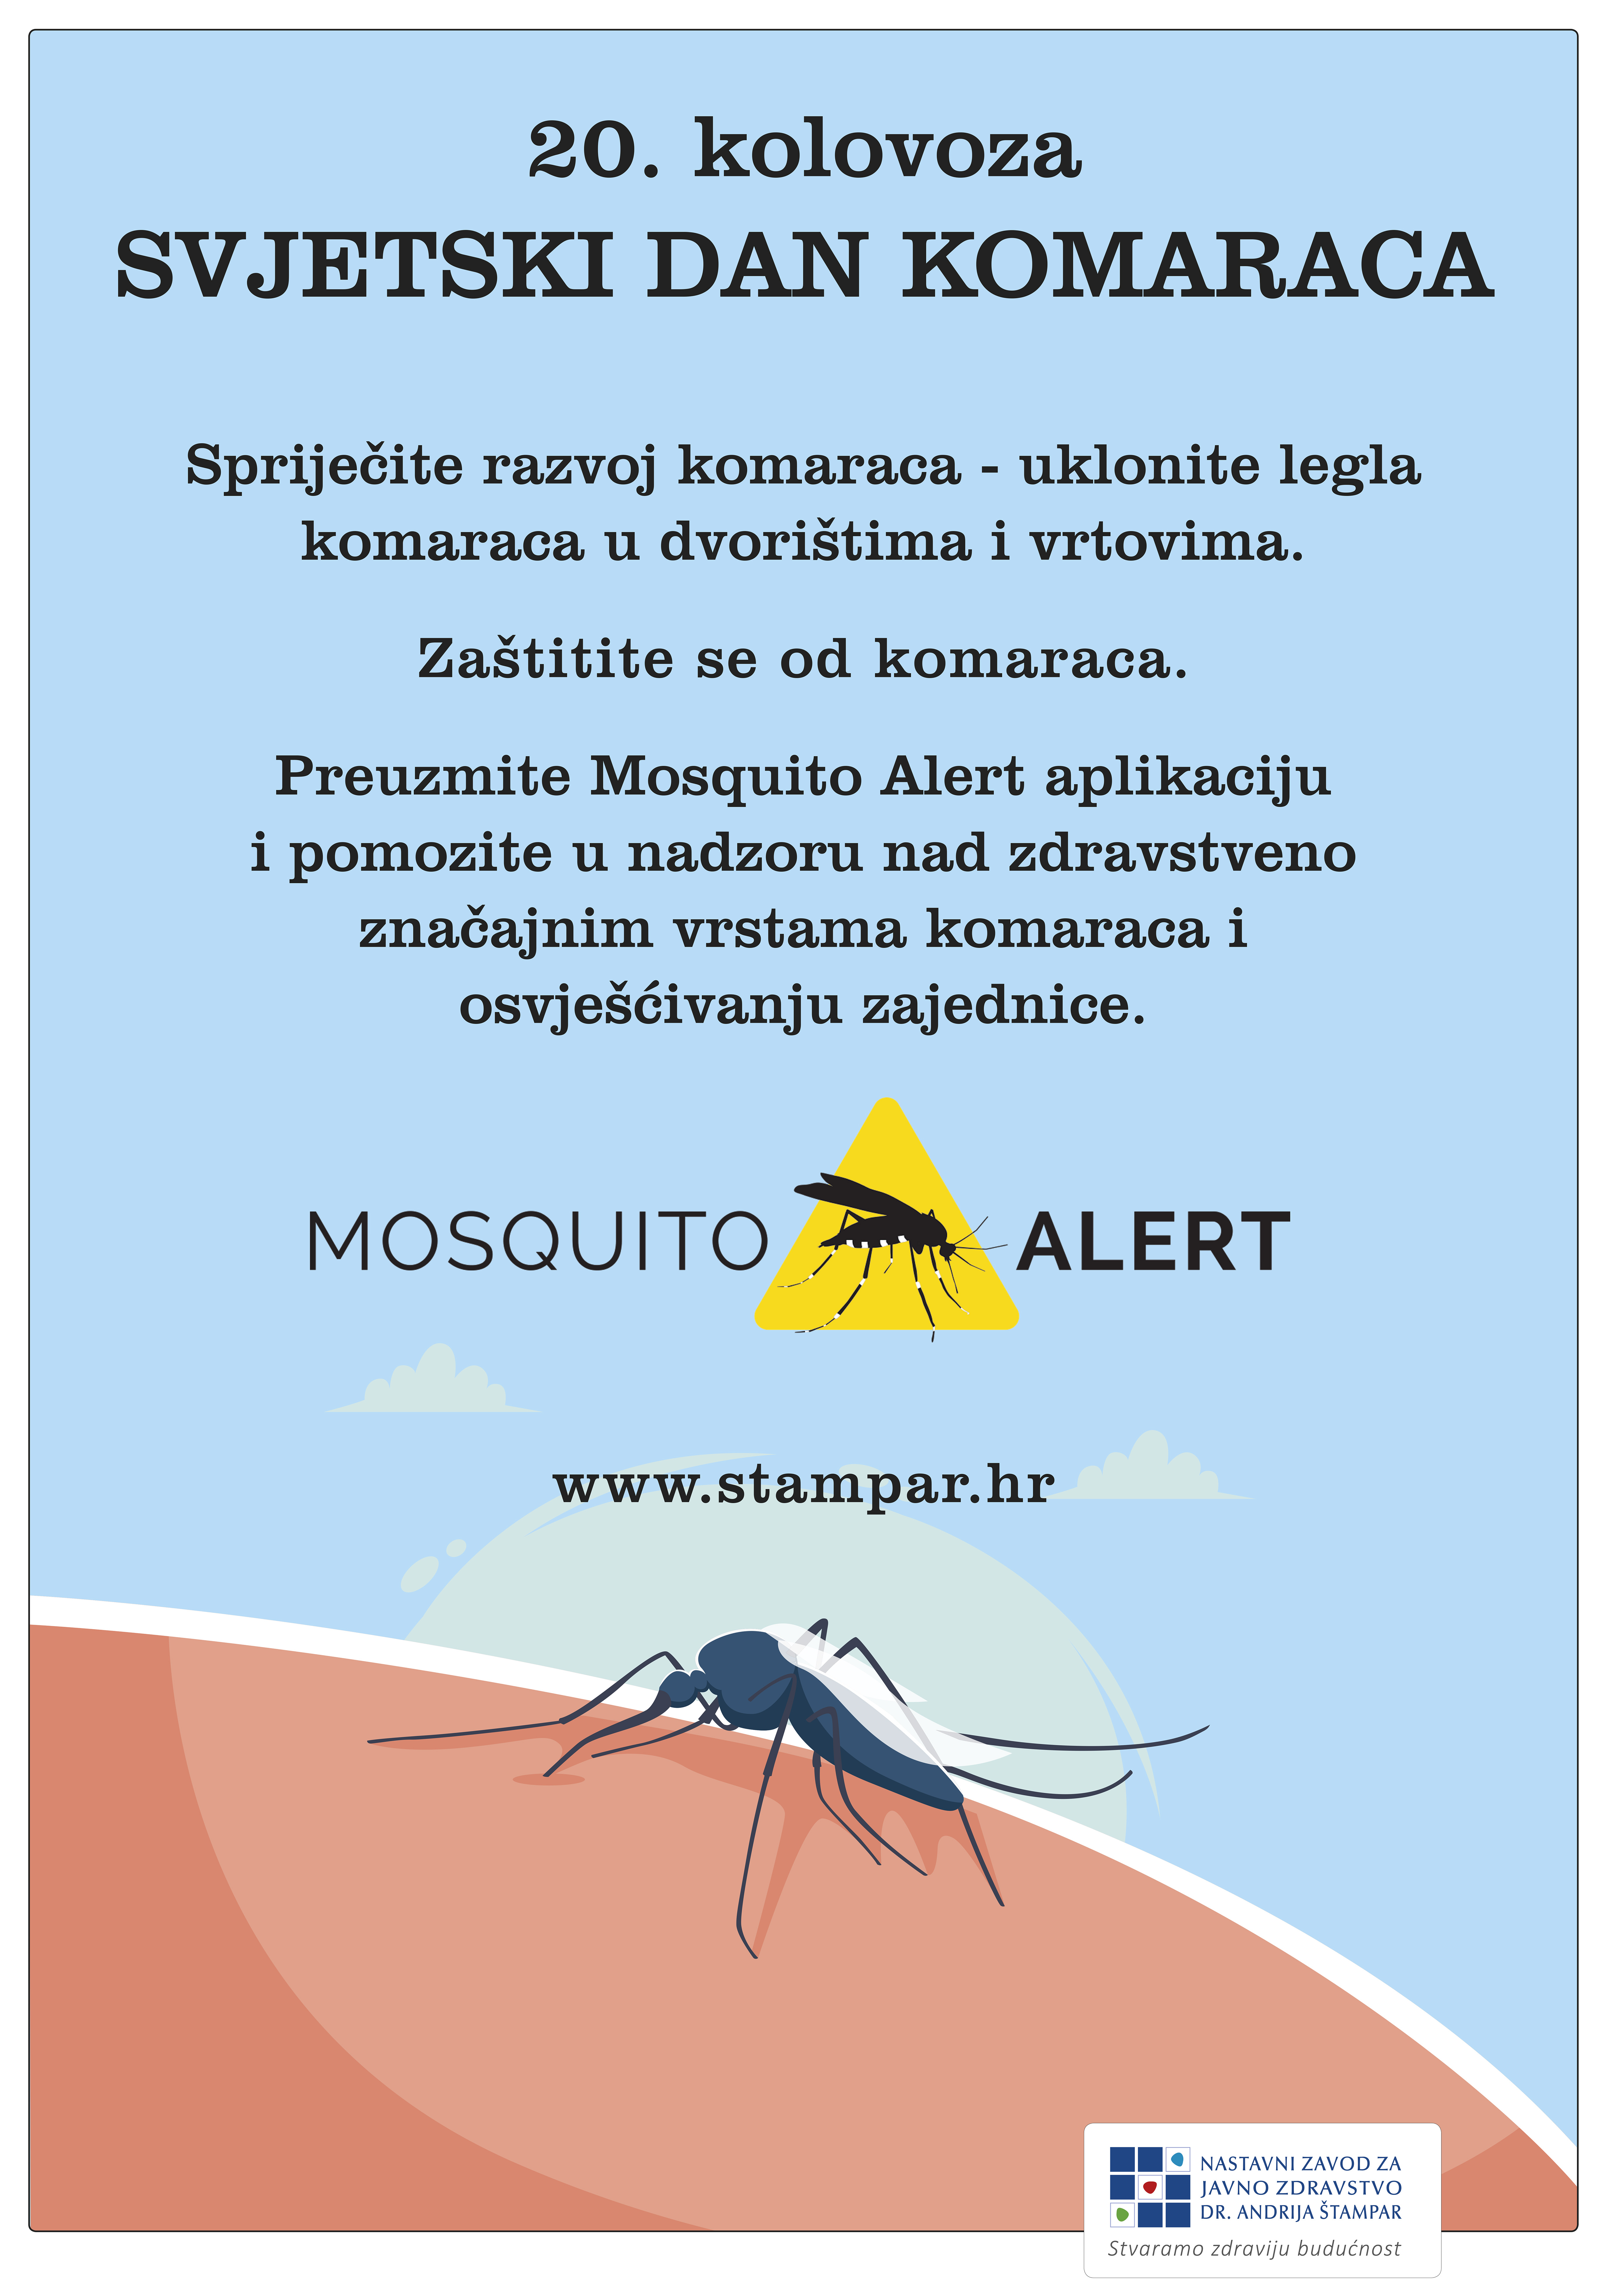 Svjetski dan komaraca 